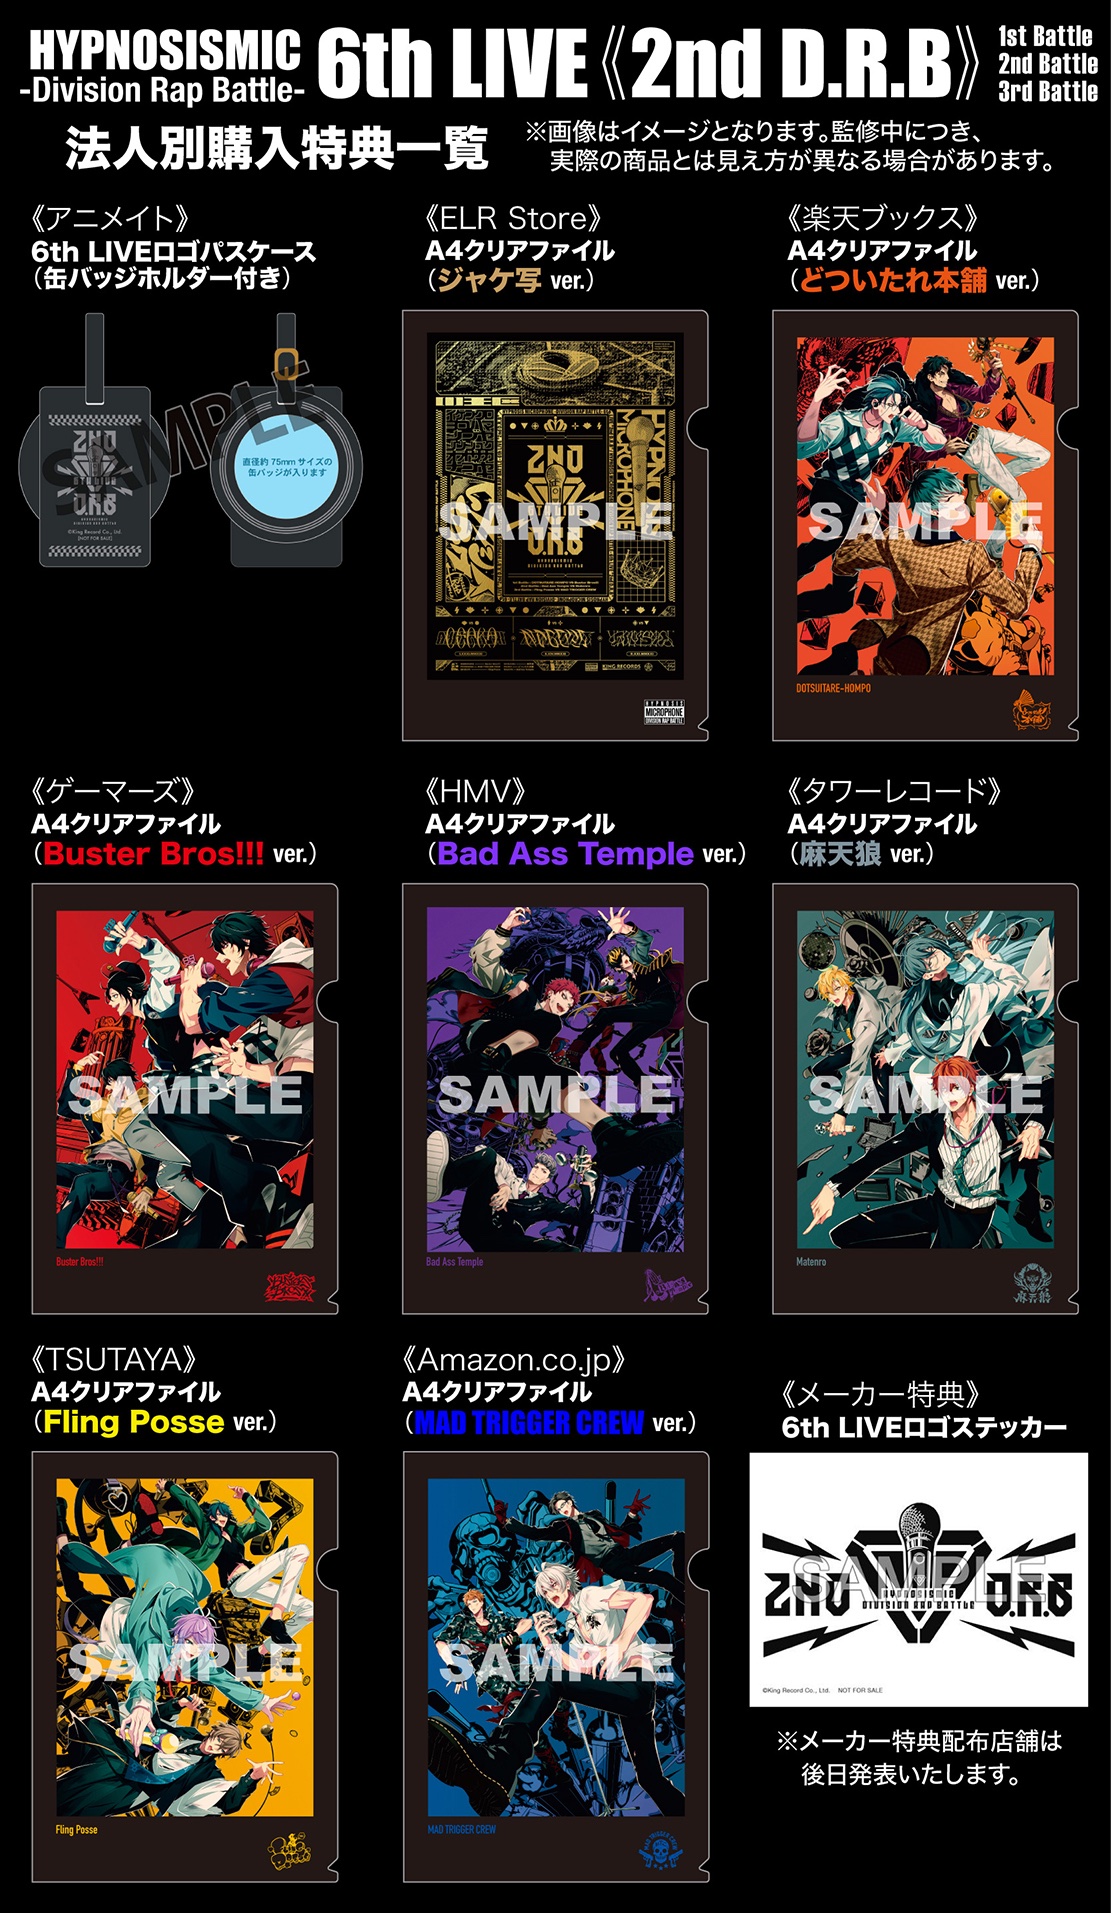 ヒプノシスマイク LIVE DVD Blu-ray 2nd 3rd